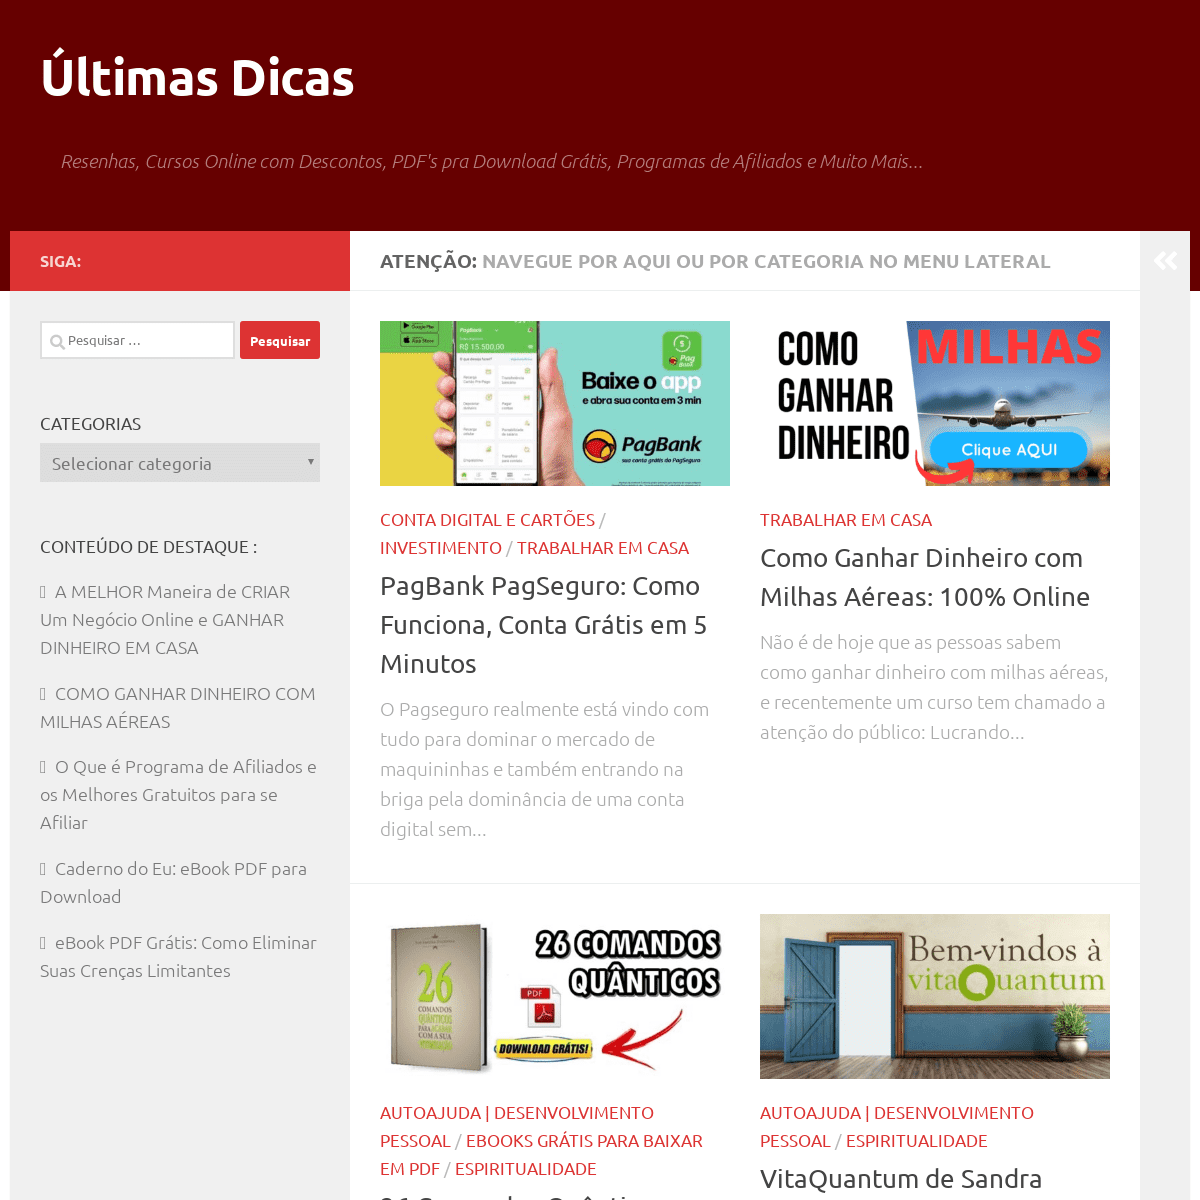 A complete backup of ultimasdicas.com